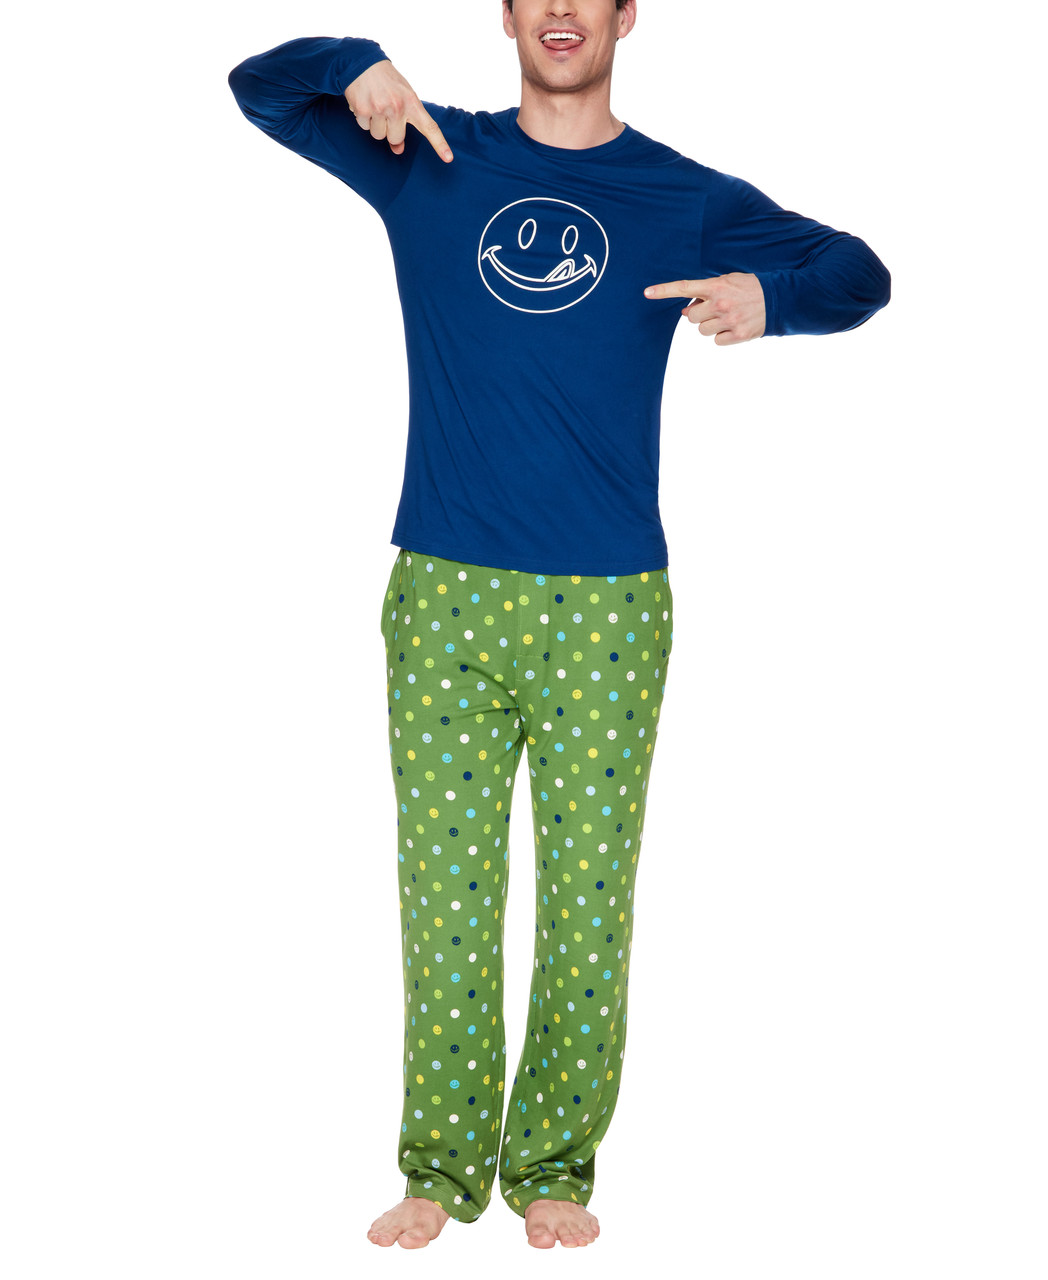 JOE BOXER Men's Moisture-Wicking 3-Pack Sleepwear Set: Pajama